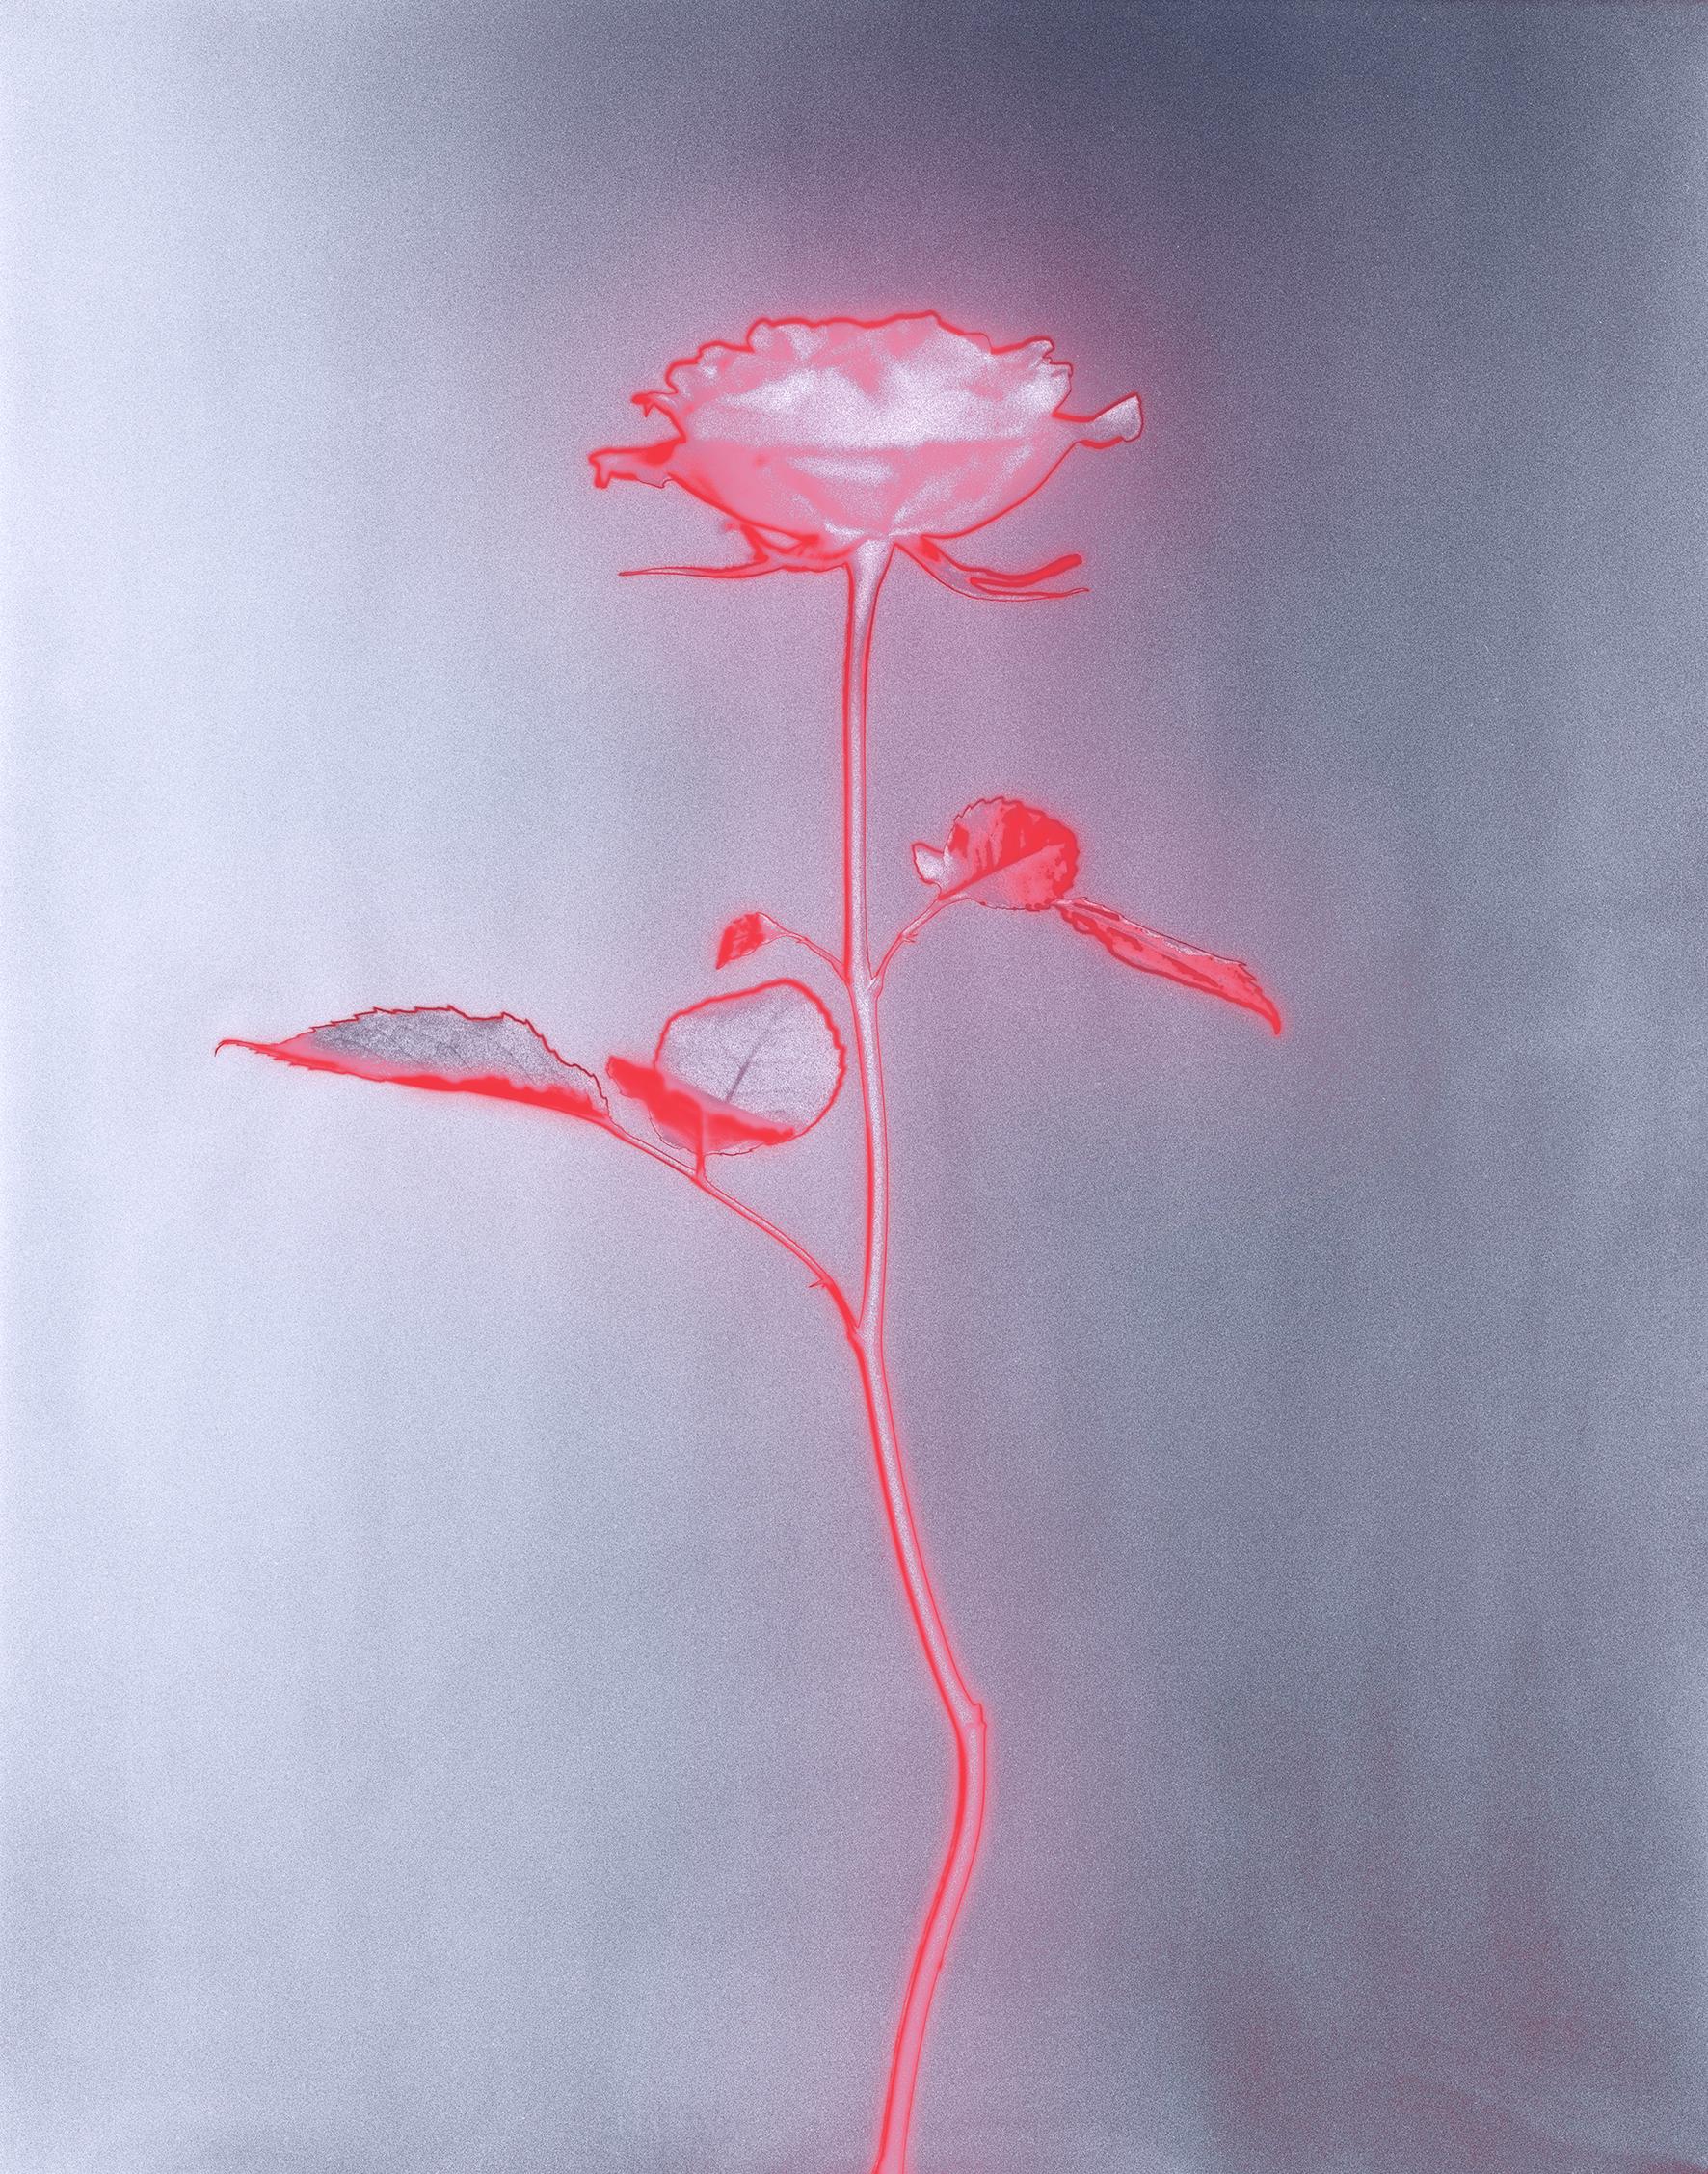 « Rose glow », photographie analogique de natures mortes, technique mixte contemporaine, rose/rouge